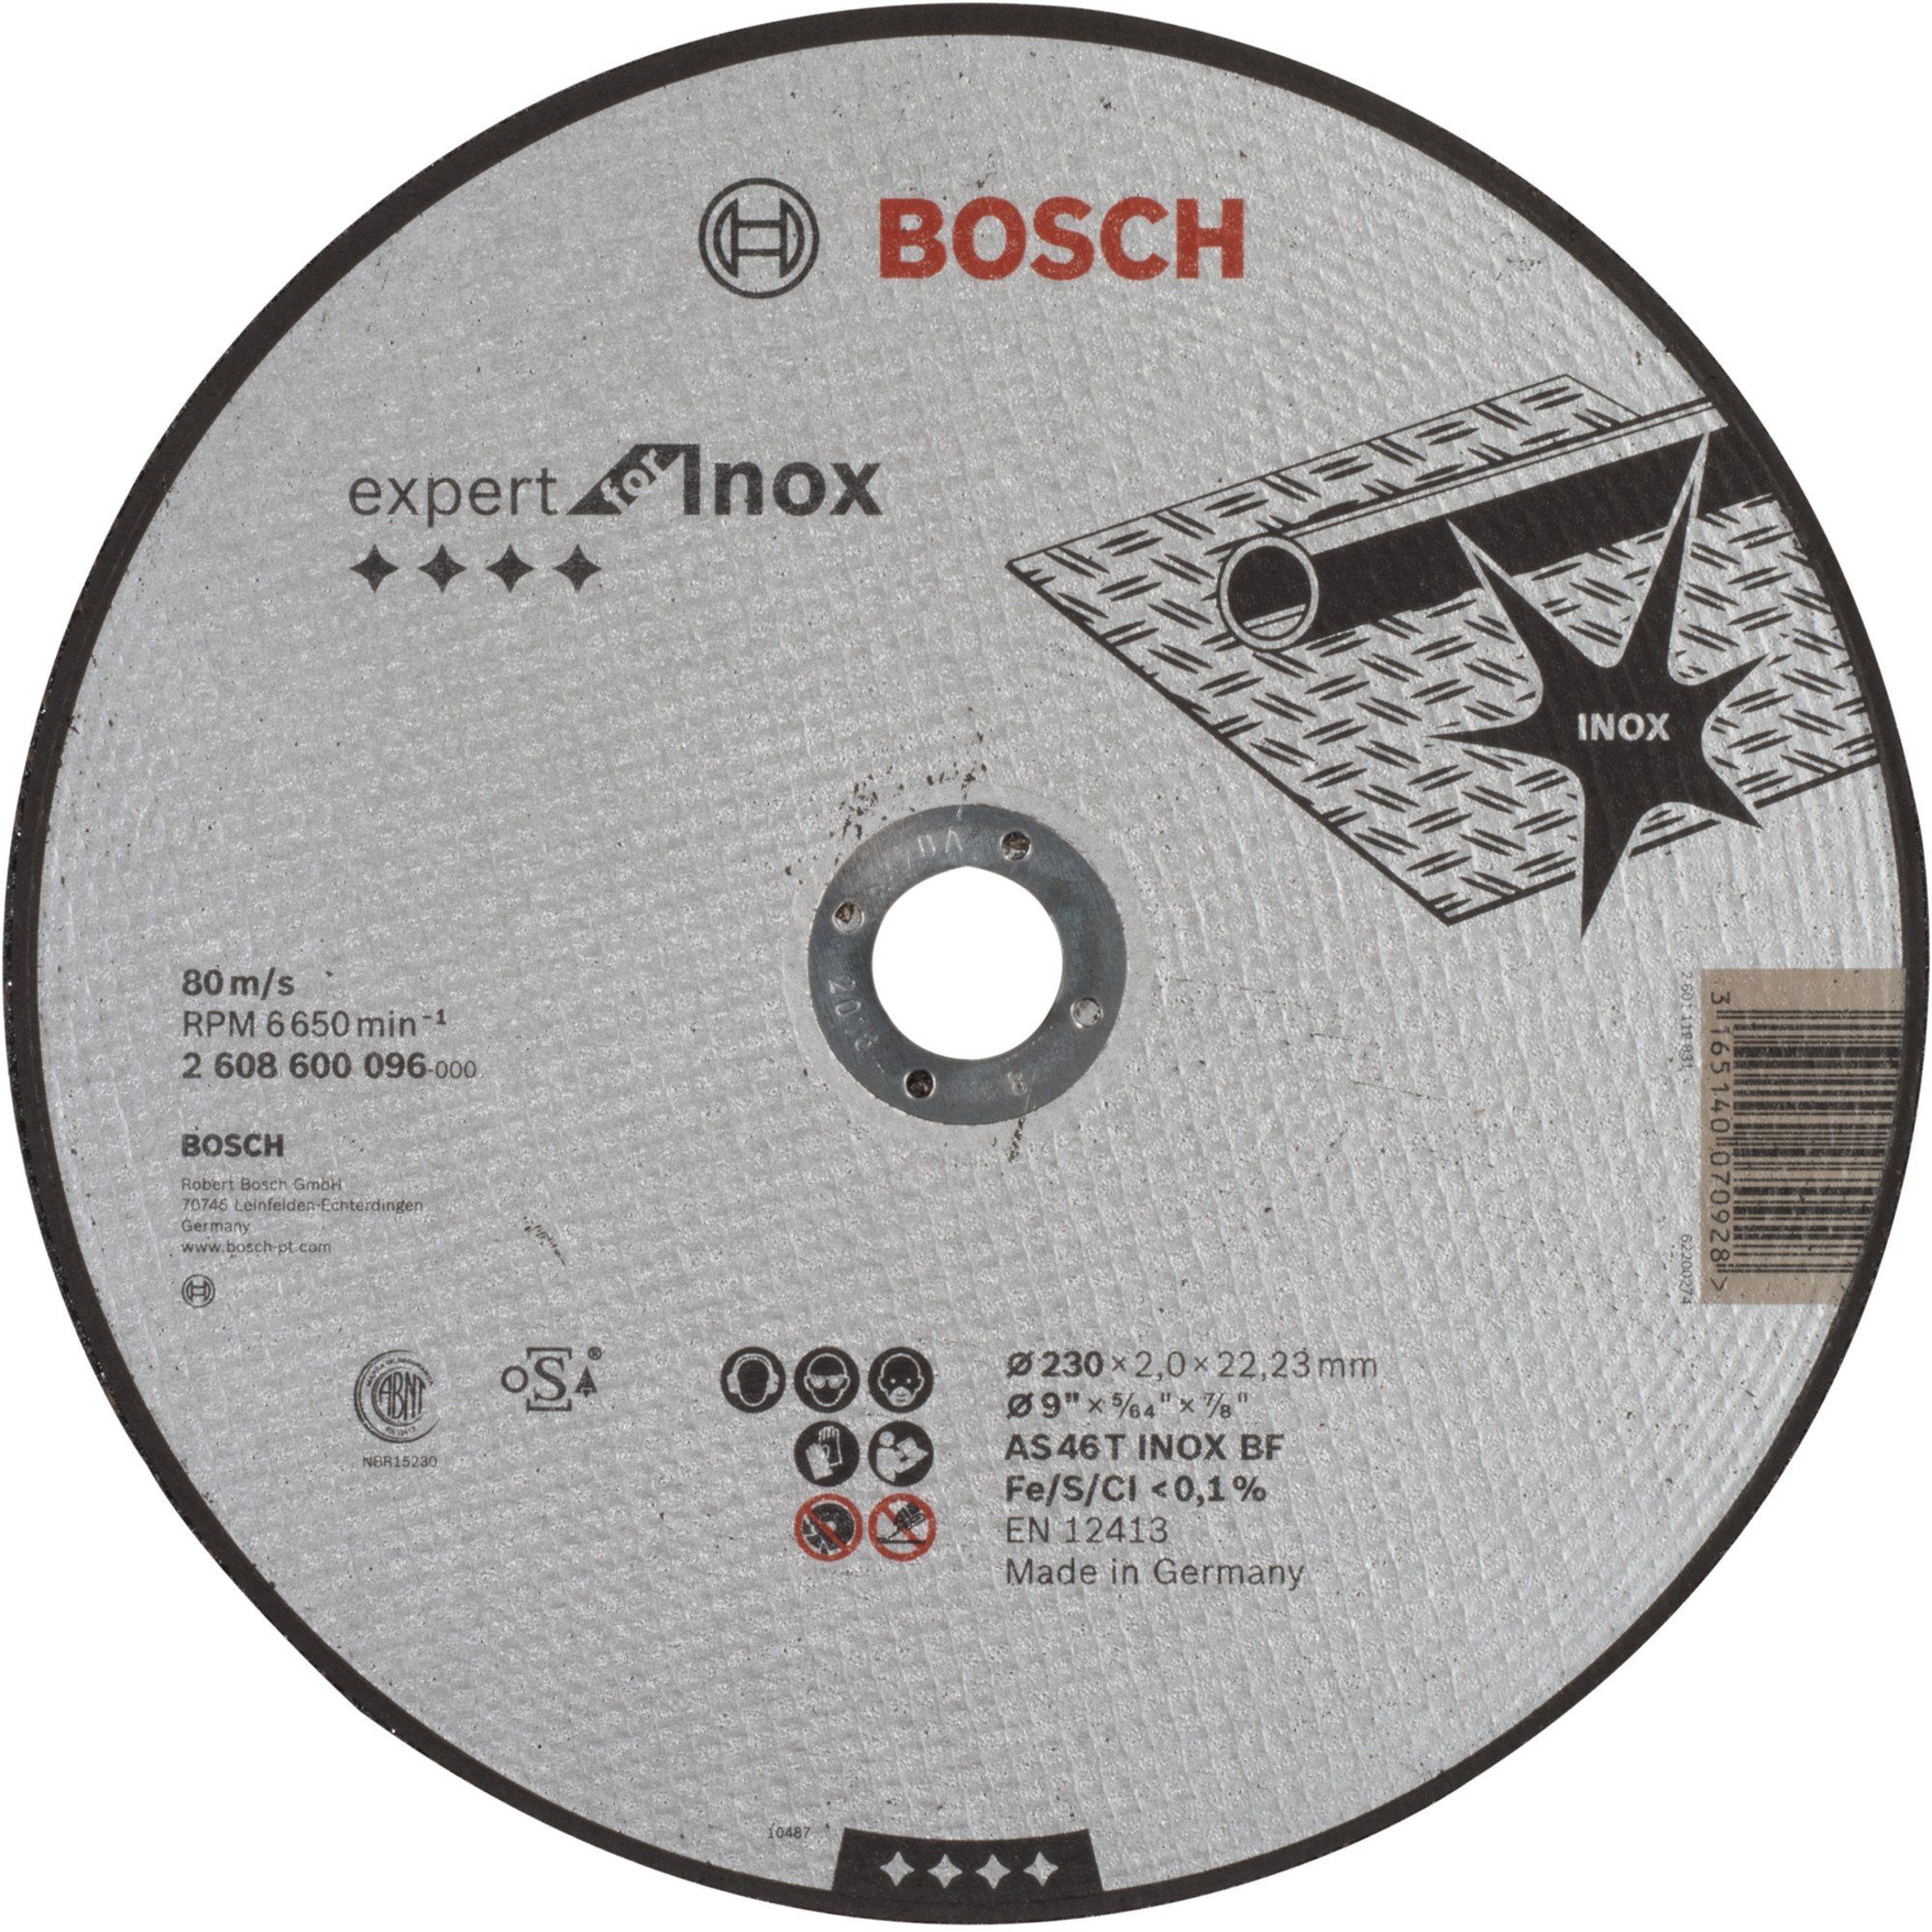 BOSCH Trennscheibe Trennscheibe Expert for Inox, Ø 230mm